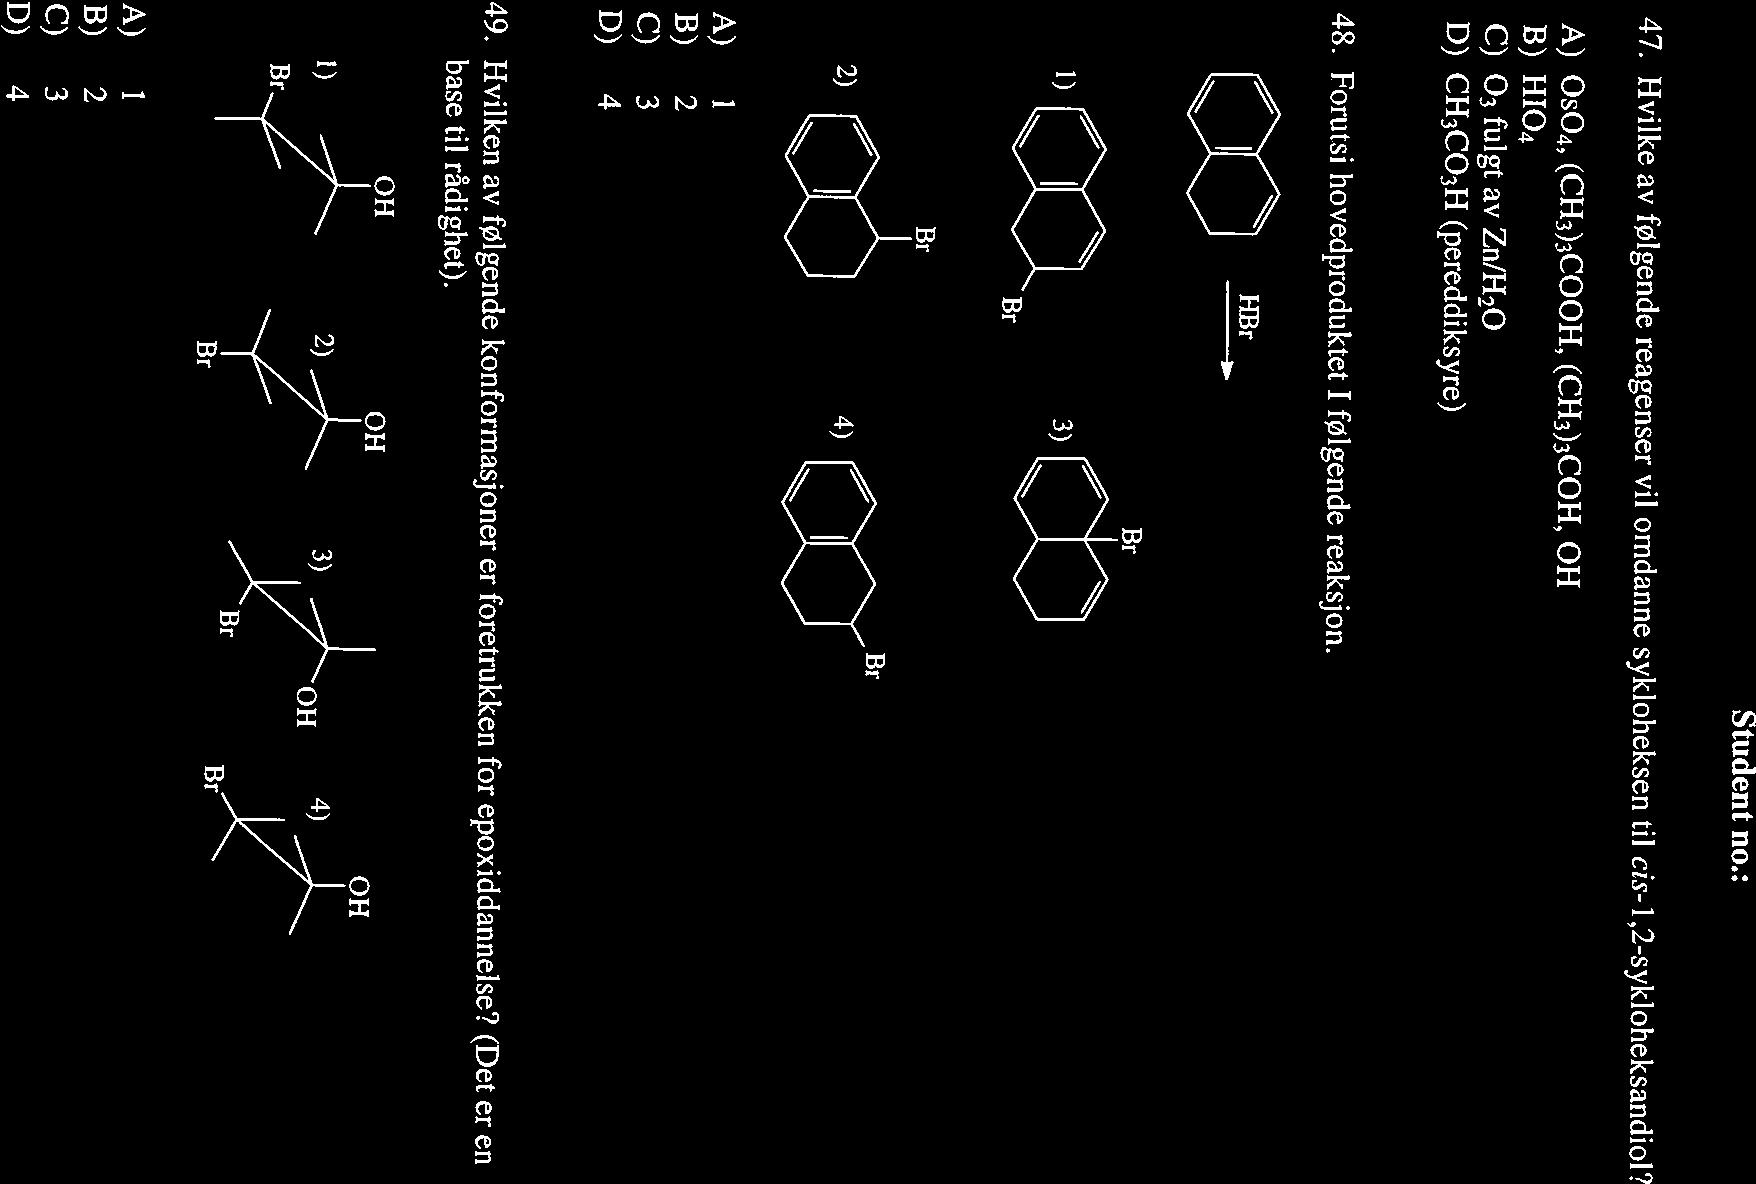 Student 110.: 47. vilke av følgende reagenser vil omdanne sykloheksen til cis-1,2-sykloheksandiol? A) 0504, (C3)3COO, (C3)3CO, O B) 104 C) 03 fulgt av Zn/20 D) C3CO3 (pereddiksyre) 48.